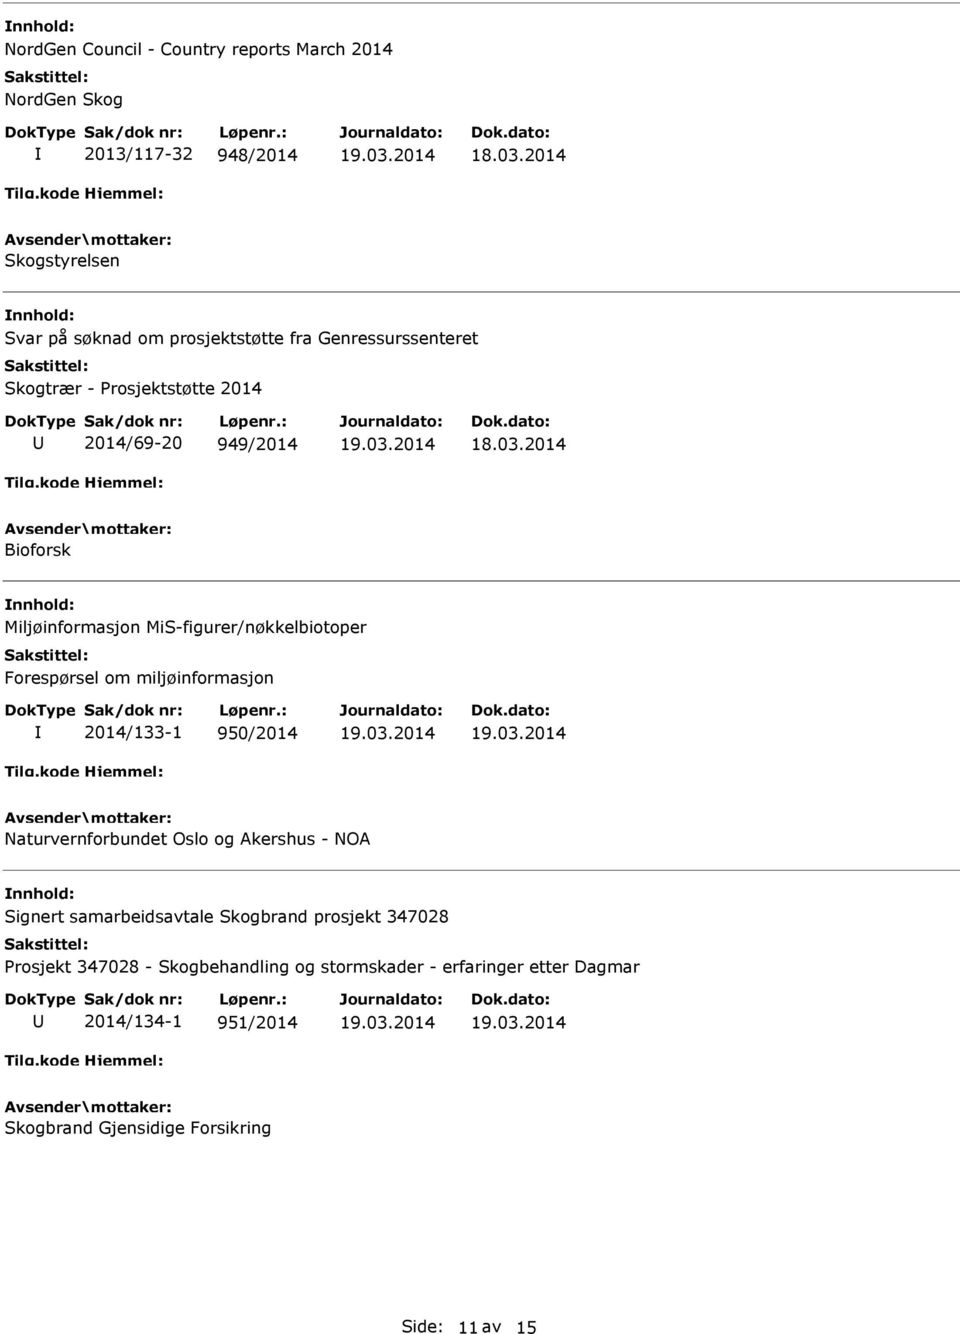 Forespørsel om miljøinformasjon 2014/133-1 950/2014 Naturvernforbundet Oslo og Akershus - NOA Signert samarbeidsavtale Skogbrand